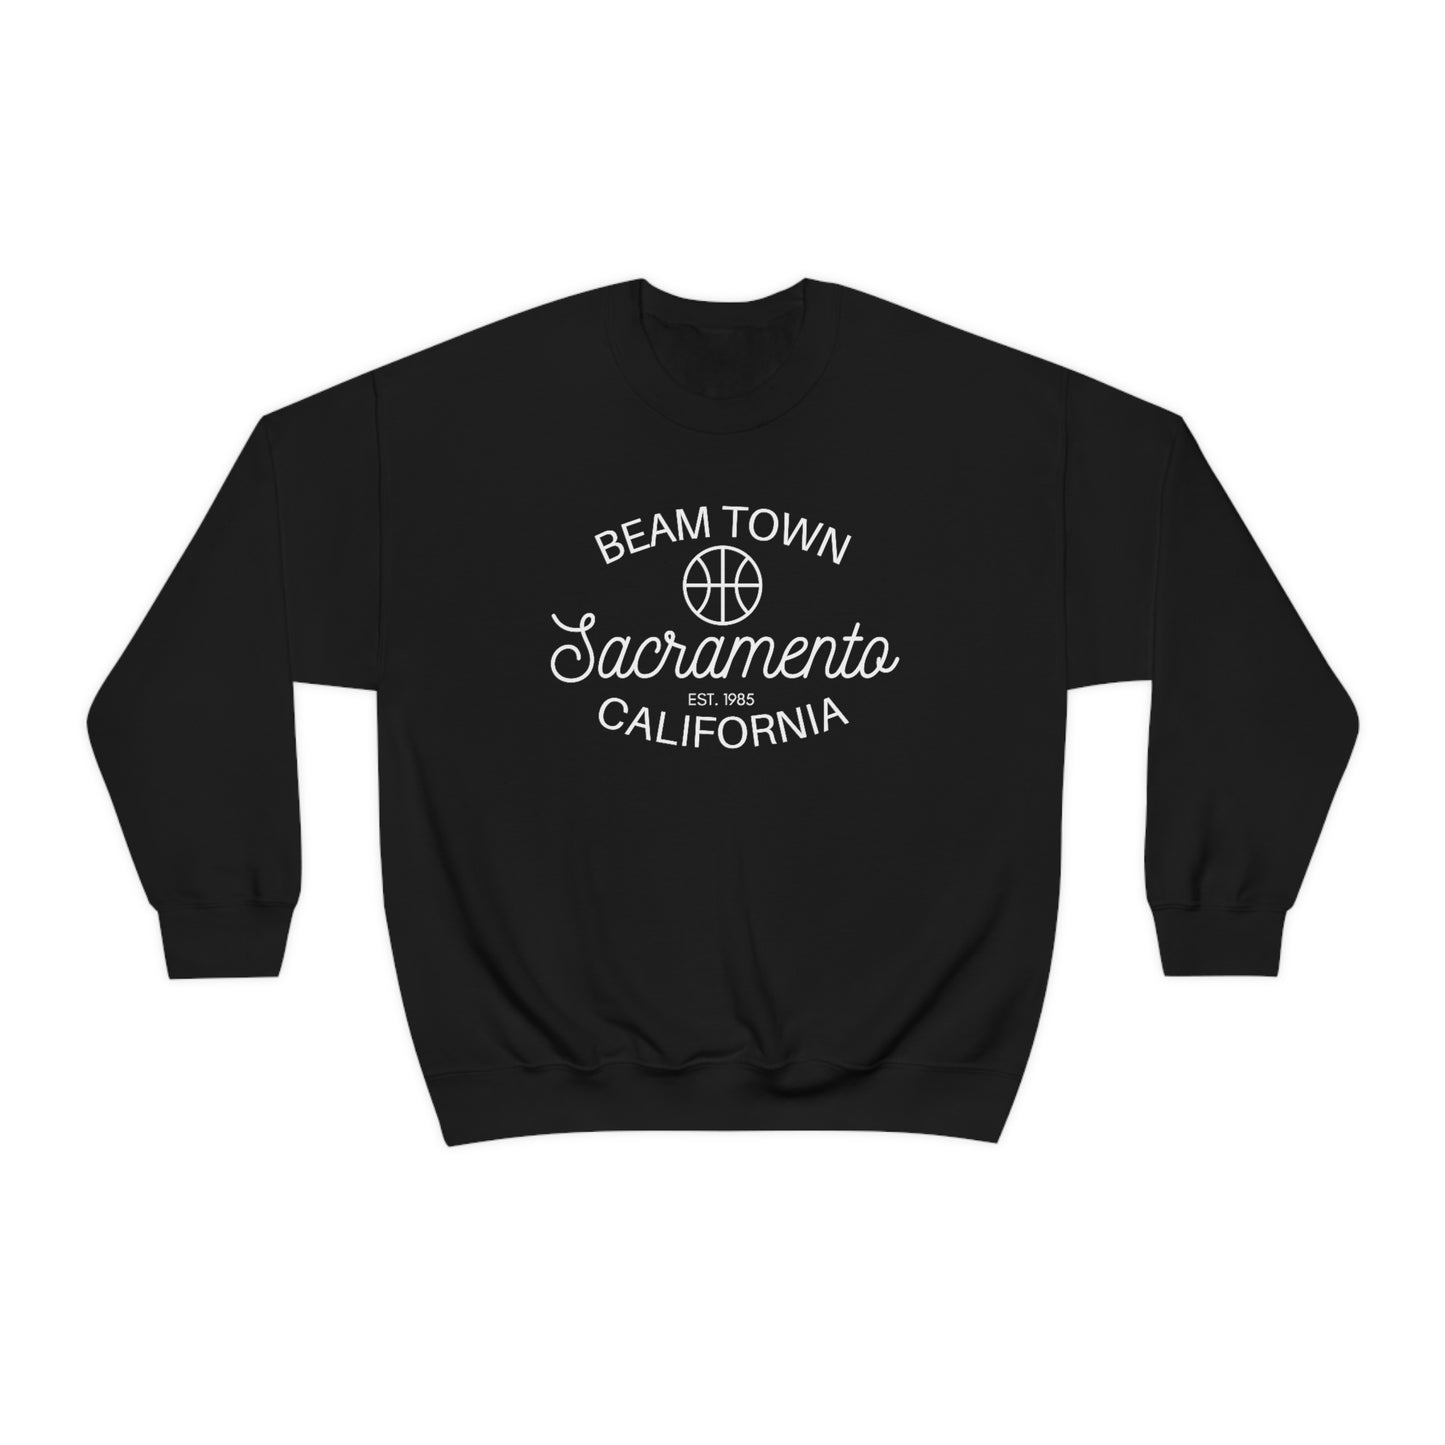 Retro Beam Town Sacramento Basketball Sweatshirt, Sac Town Basketball Sweater, Sac Team Fan Shirt, Light the Beam, Retro Style Beam Team, Black